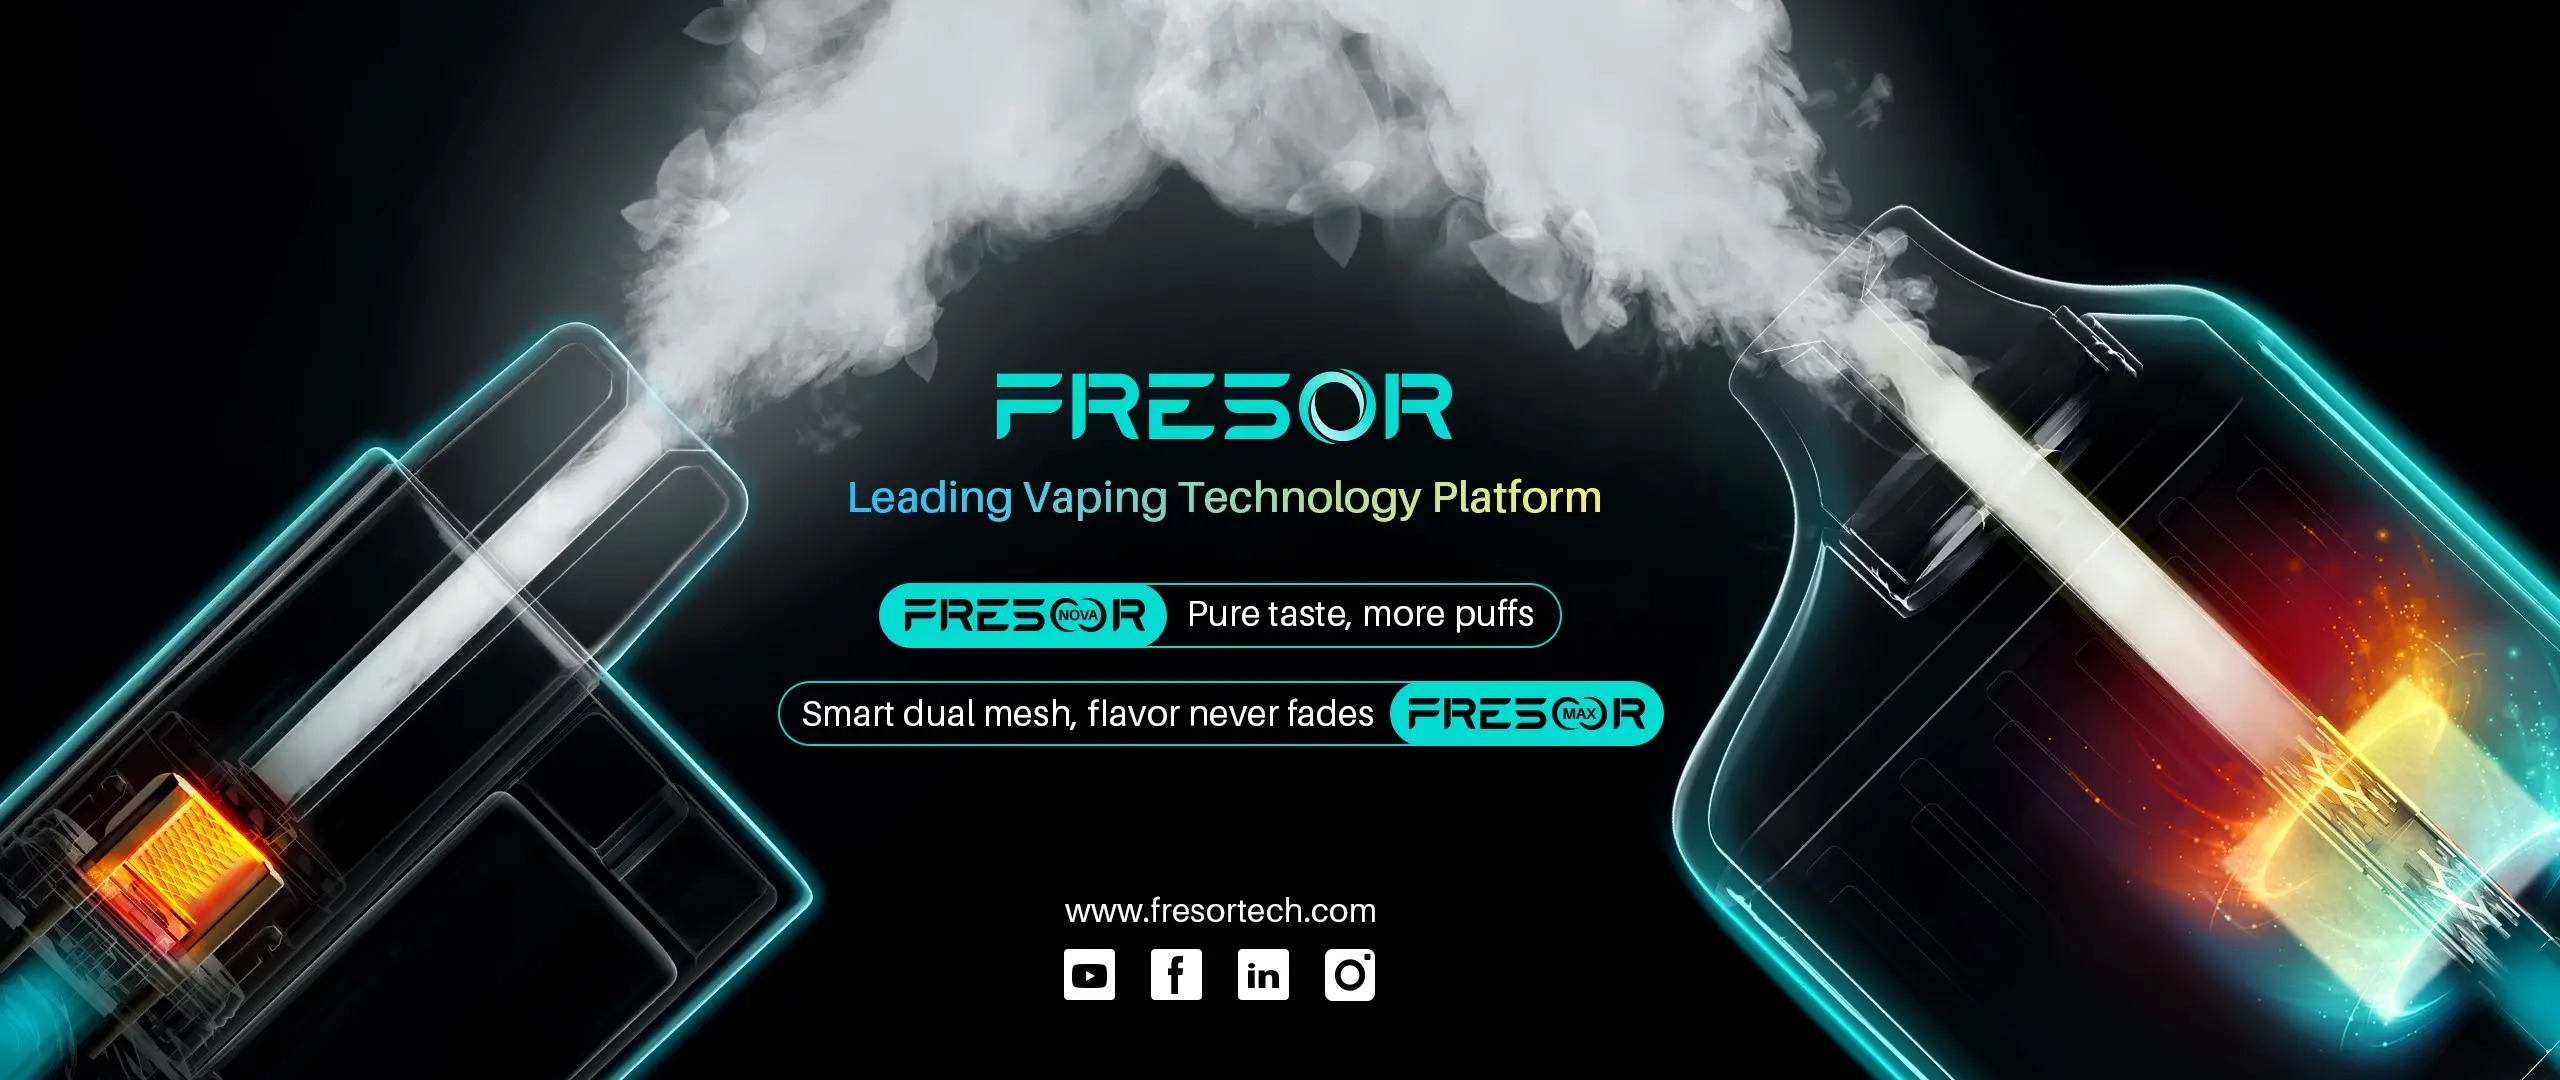 Launch of Vape technology brand - FRESOR